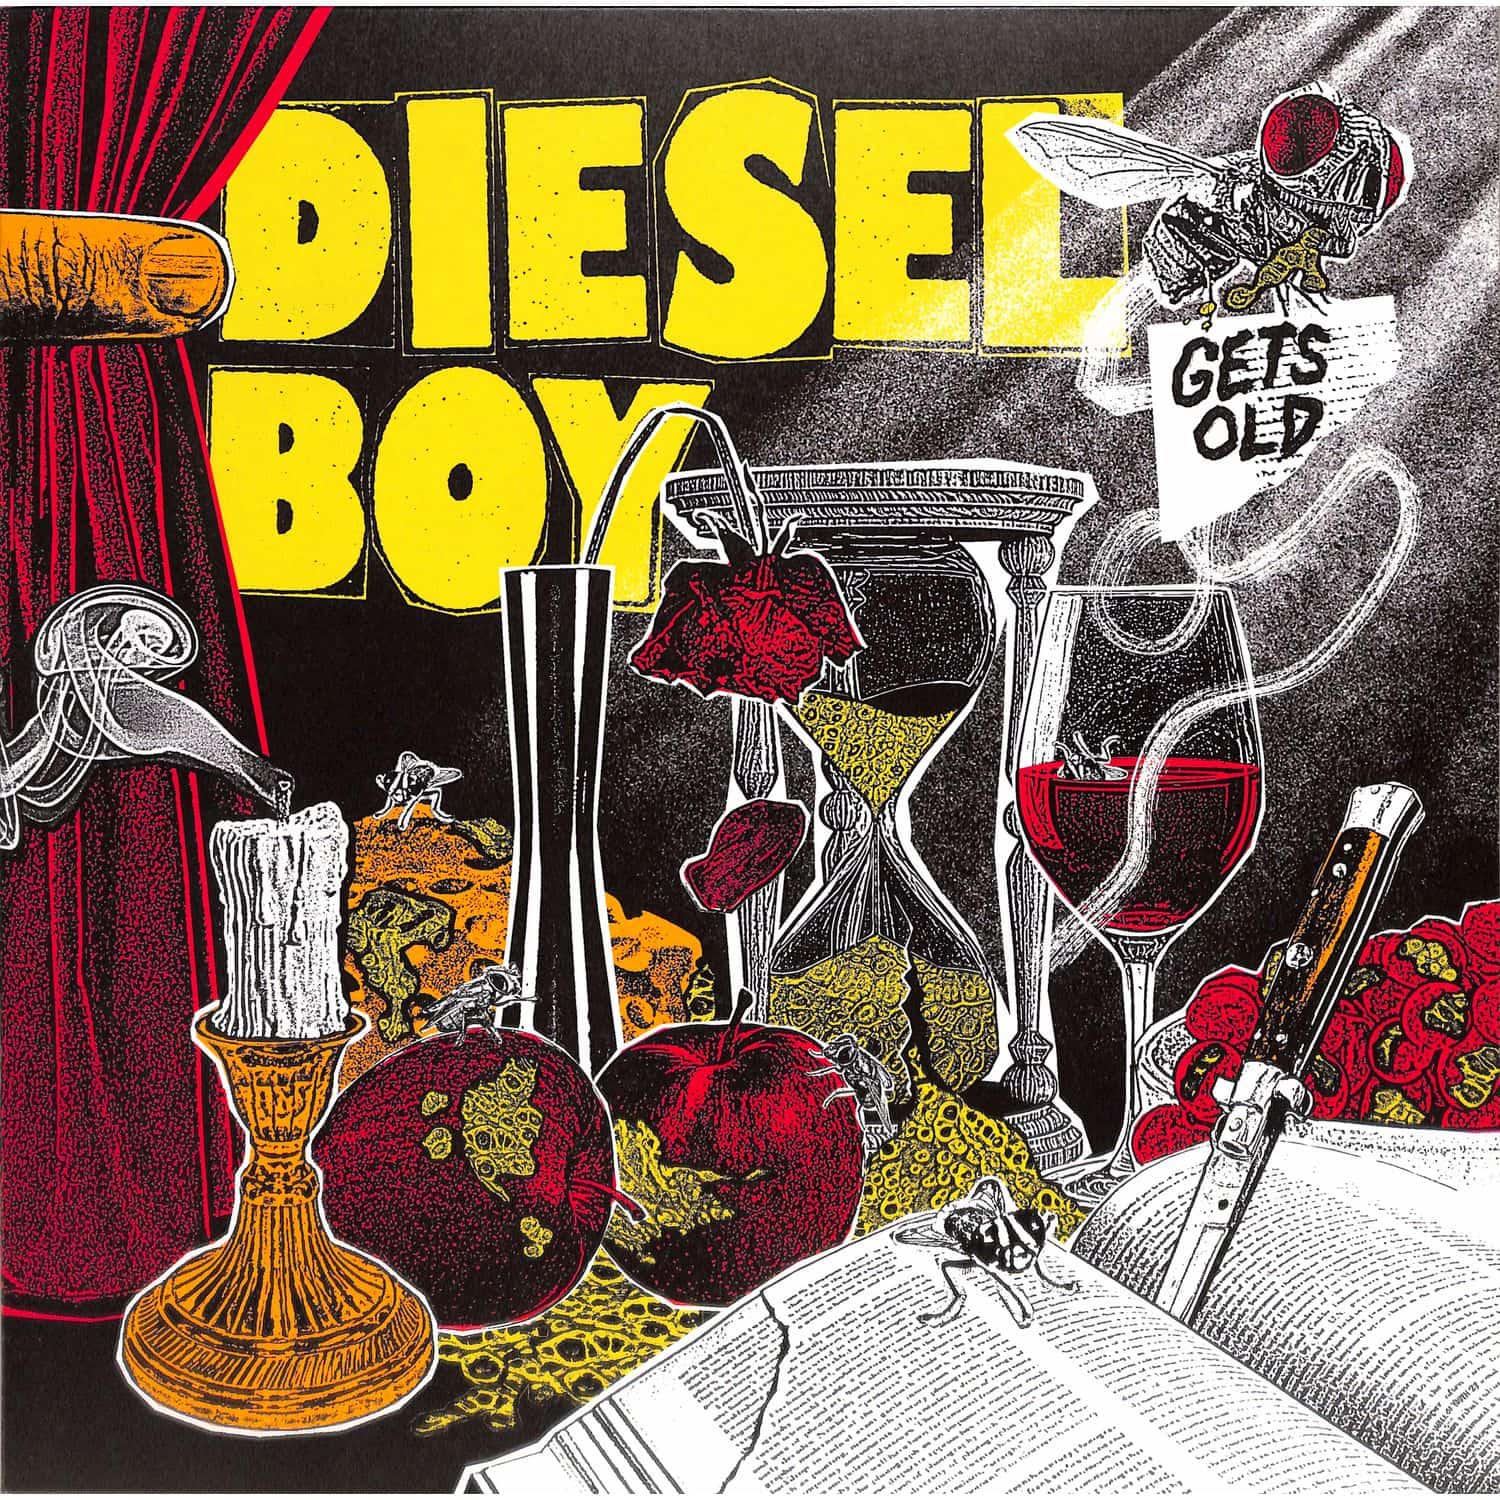 Diesel Boy - GETS OLD 